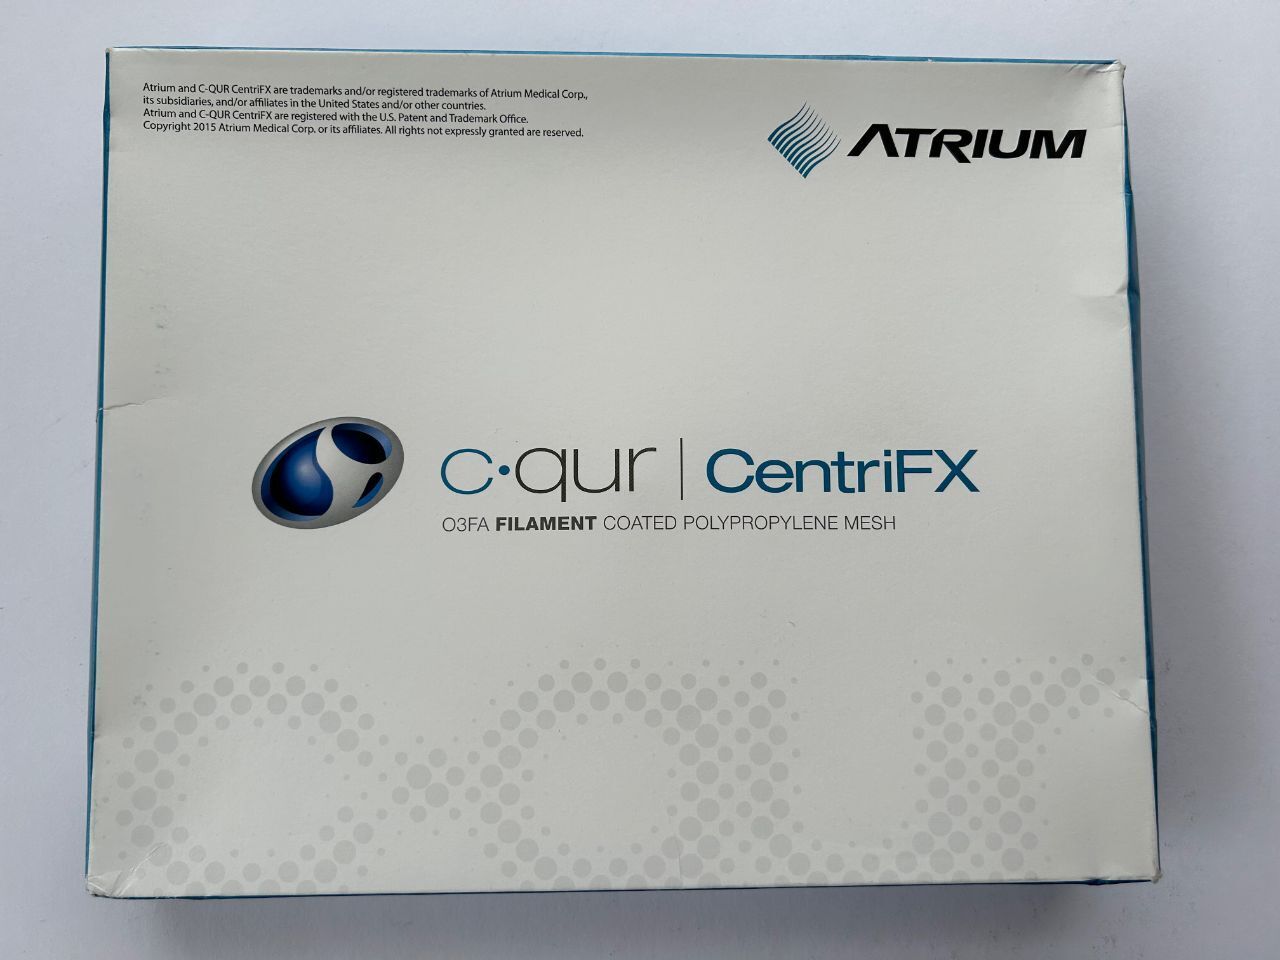 ATRIUM C qur | CentriFX O3FA FILAMENT COATED POLYPROPYLENE MESH 10.5 cm x 16 cm REF: 31396